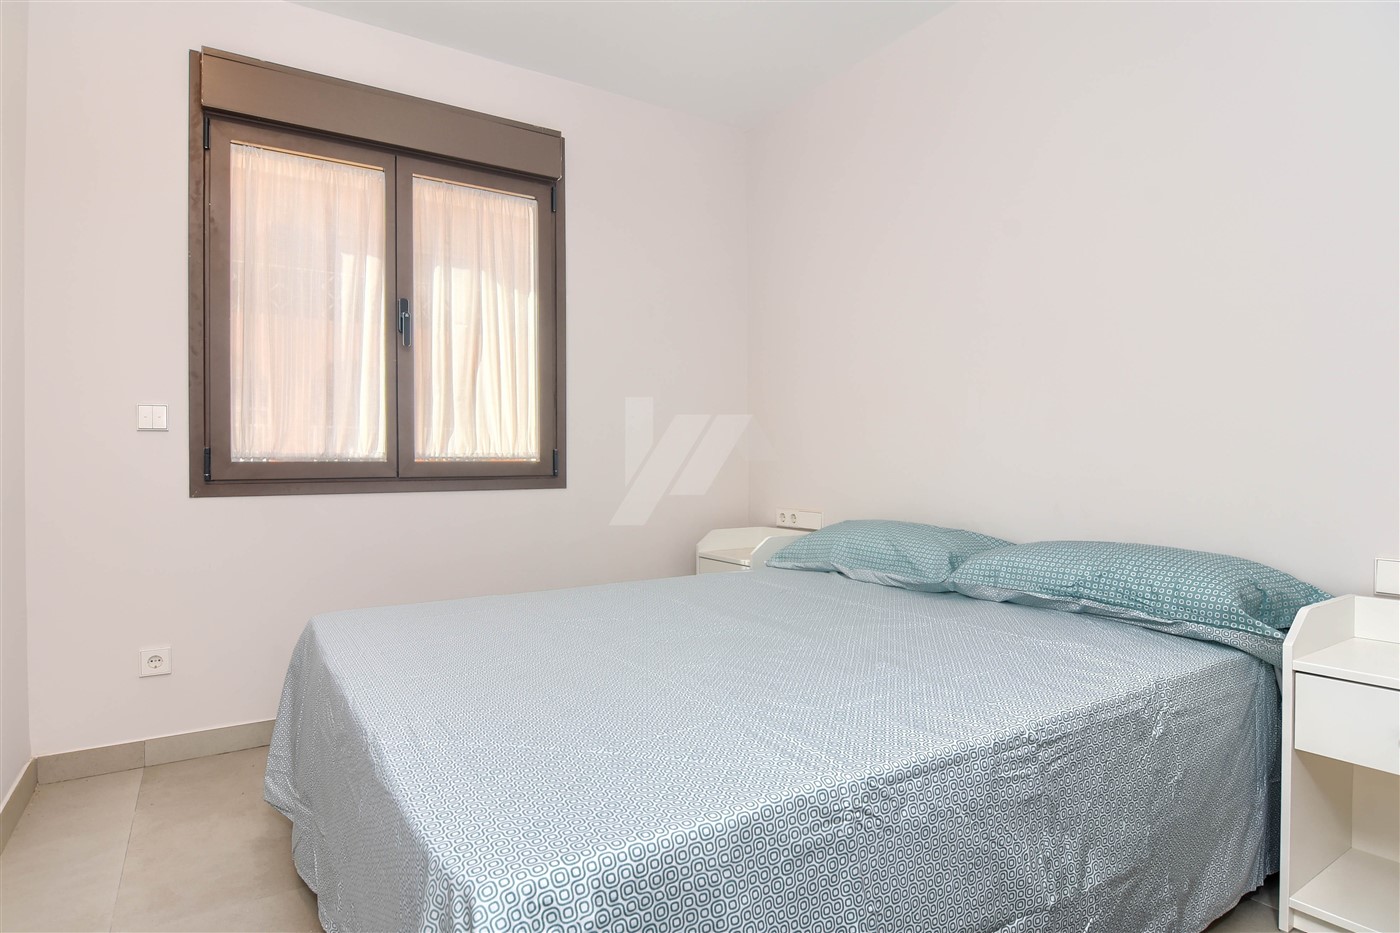 Appartement met zeezicht in Moraira, Costa Blanca.